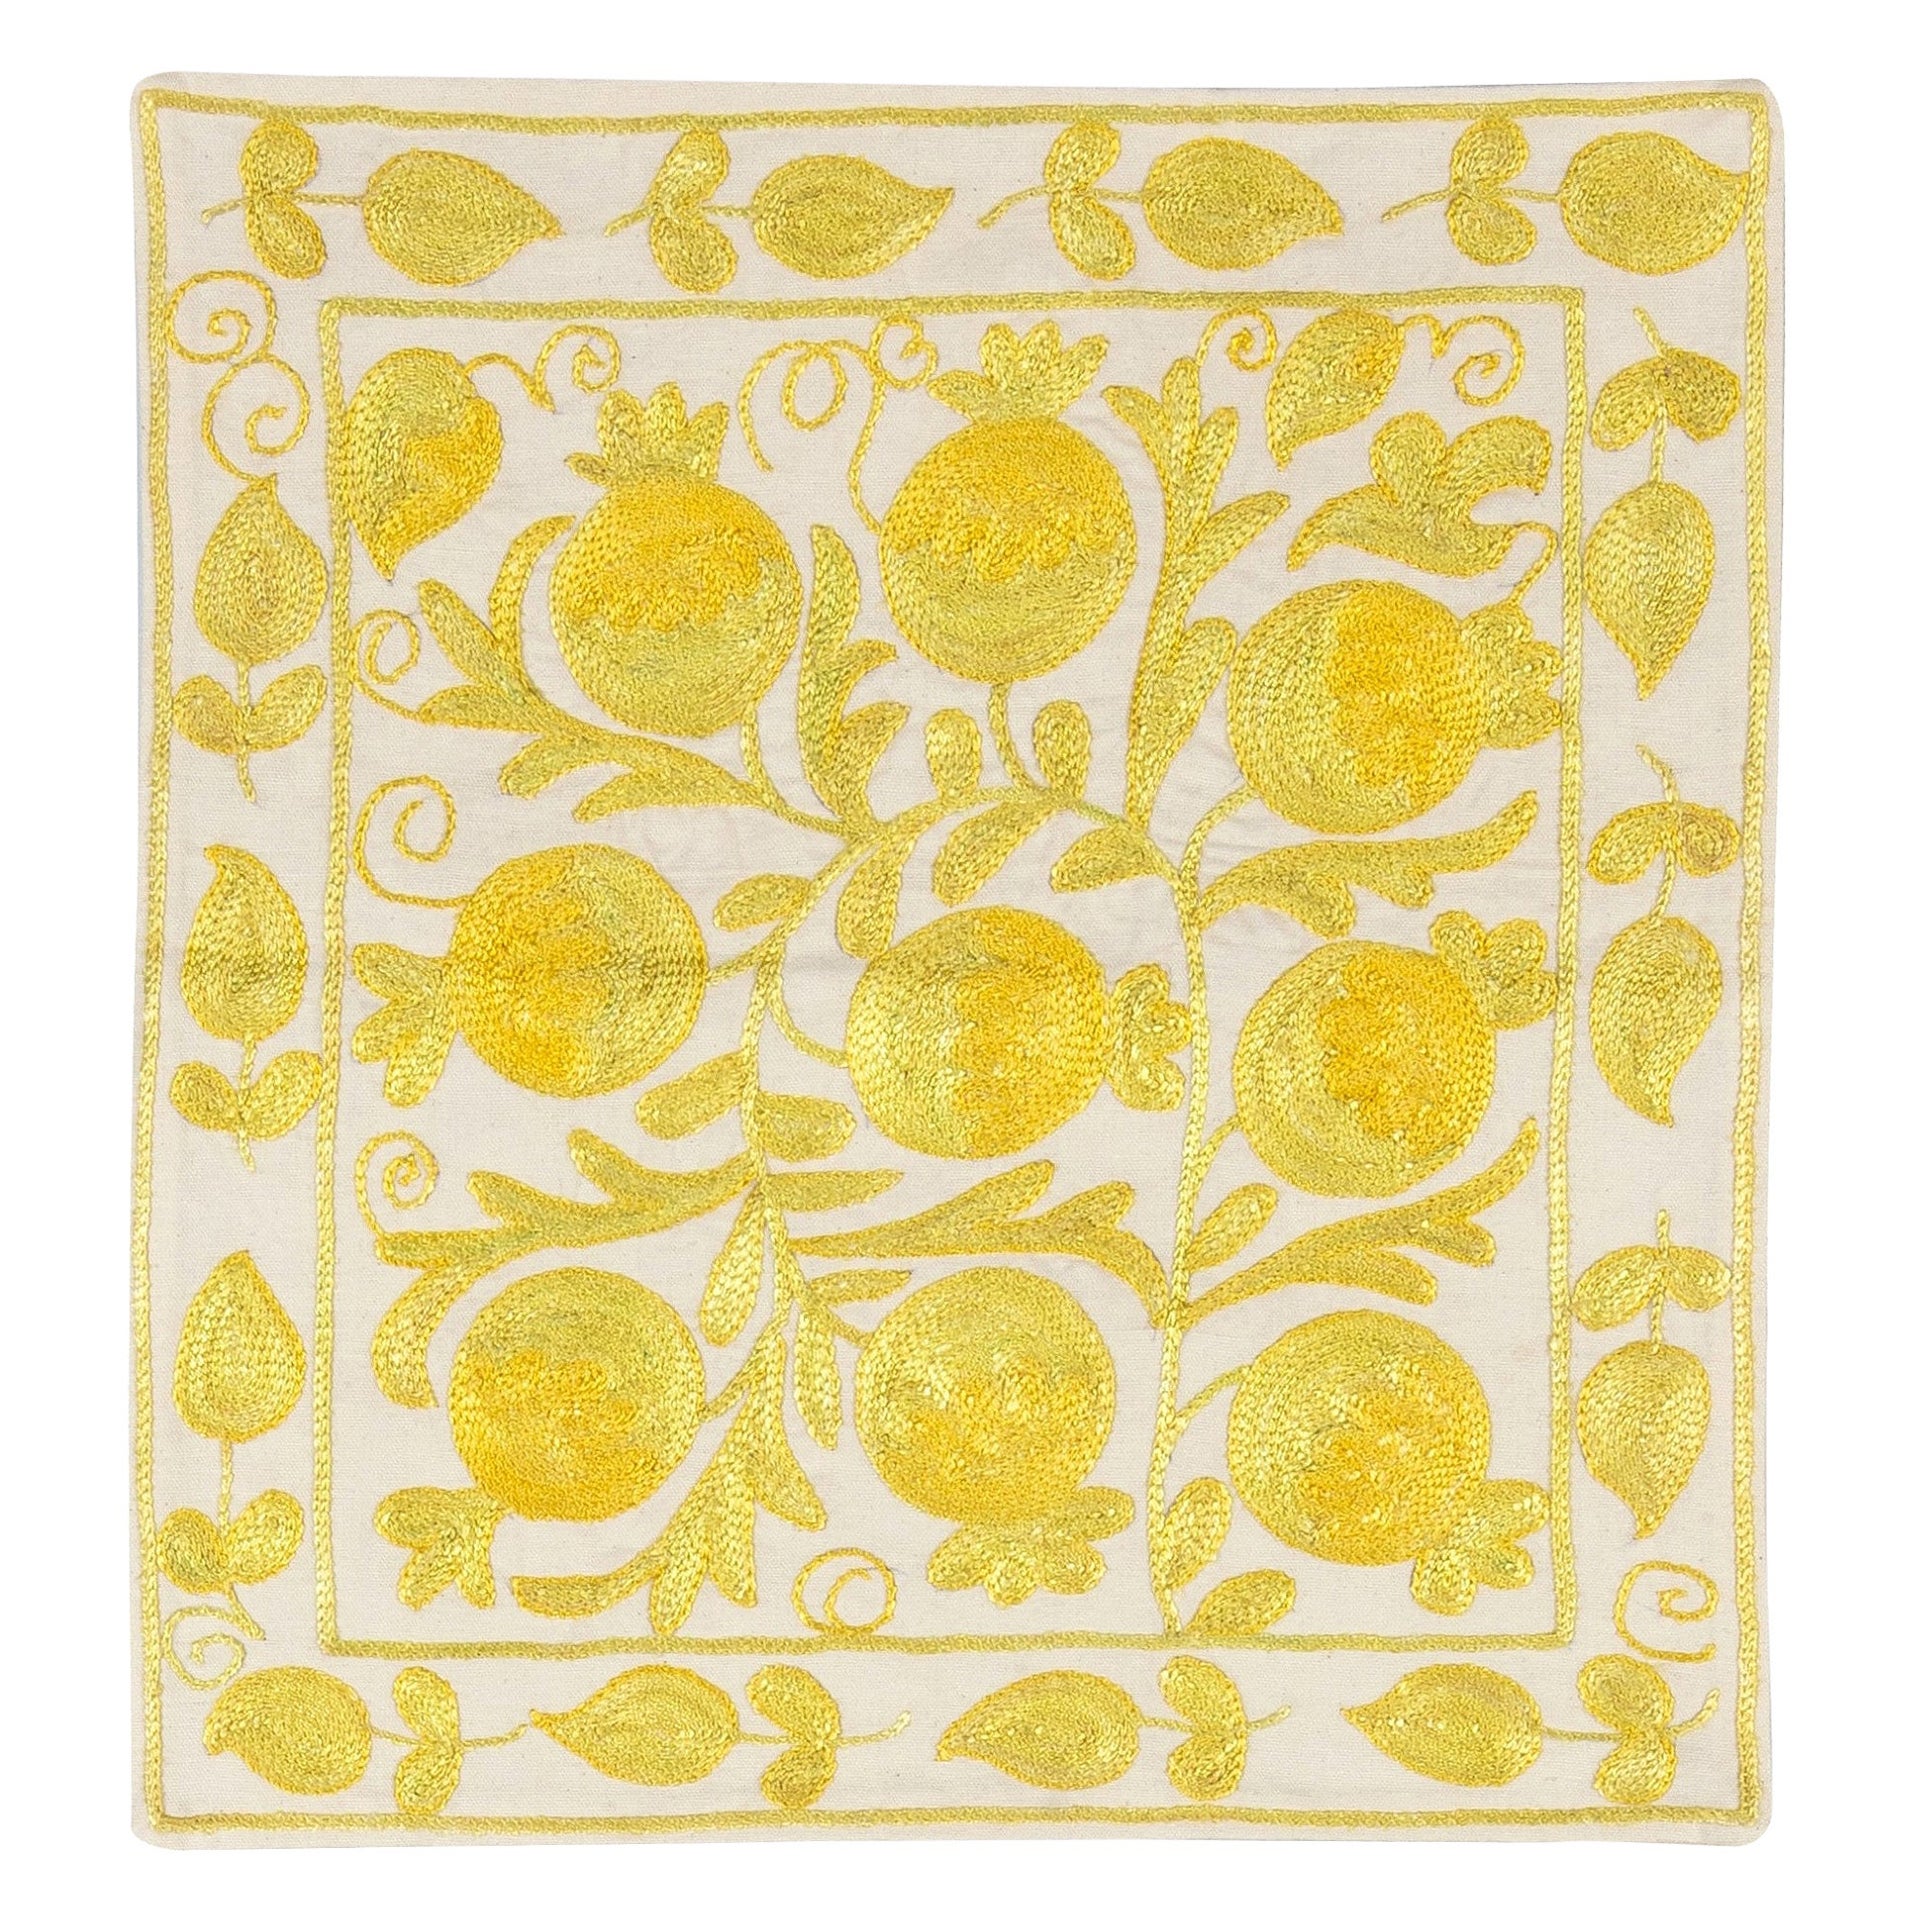 Housse de coussin décorative en soie brodée à la main, ivoire et jaune, de 17x17 pouces